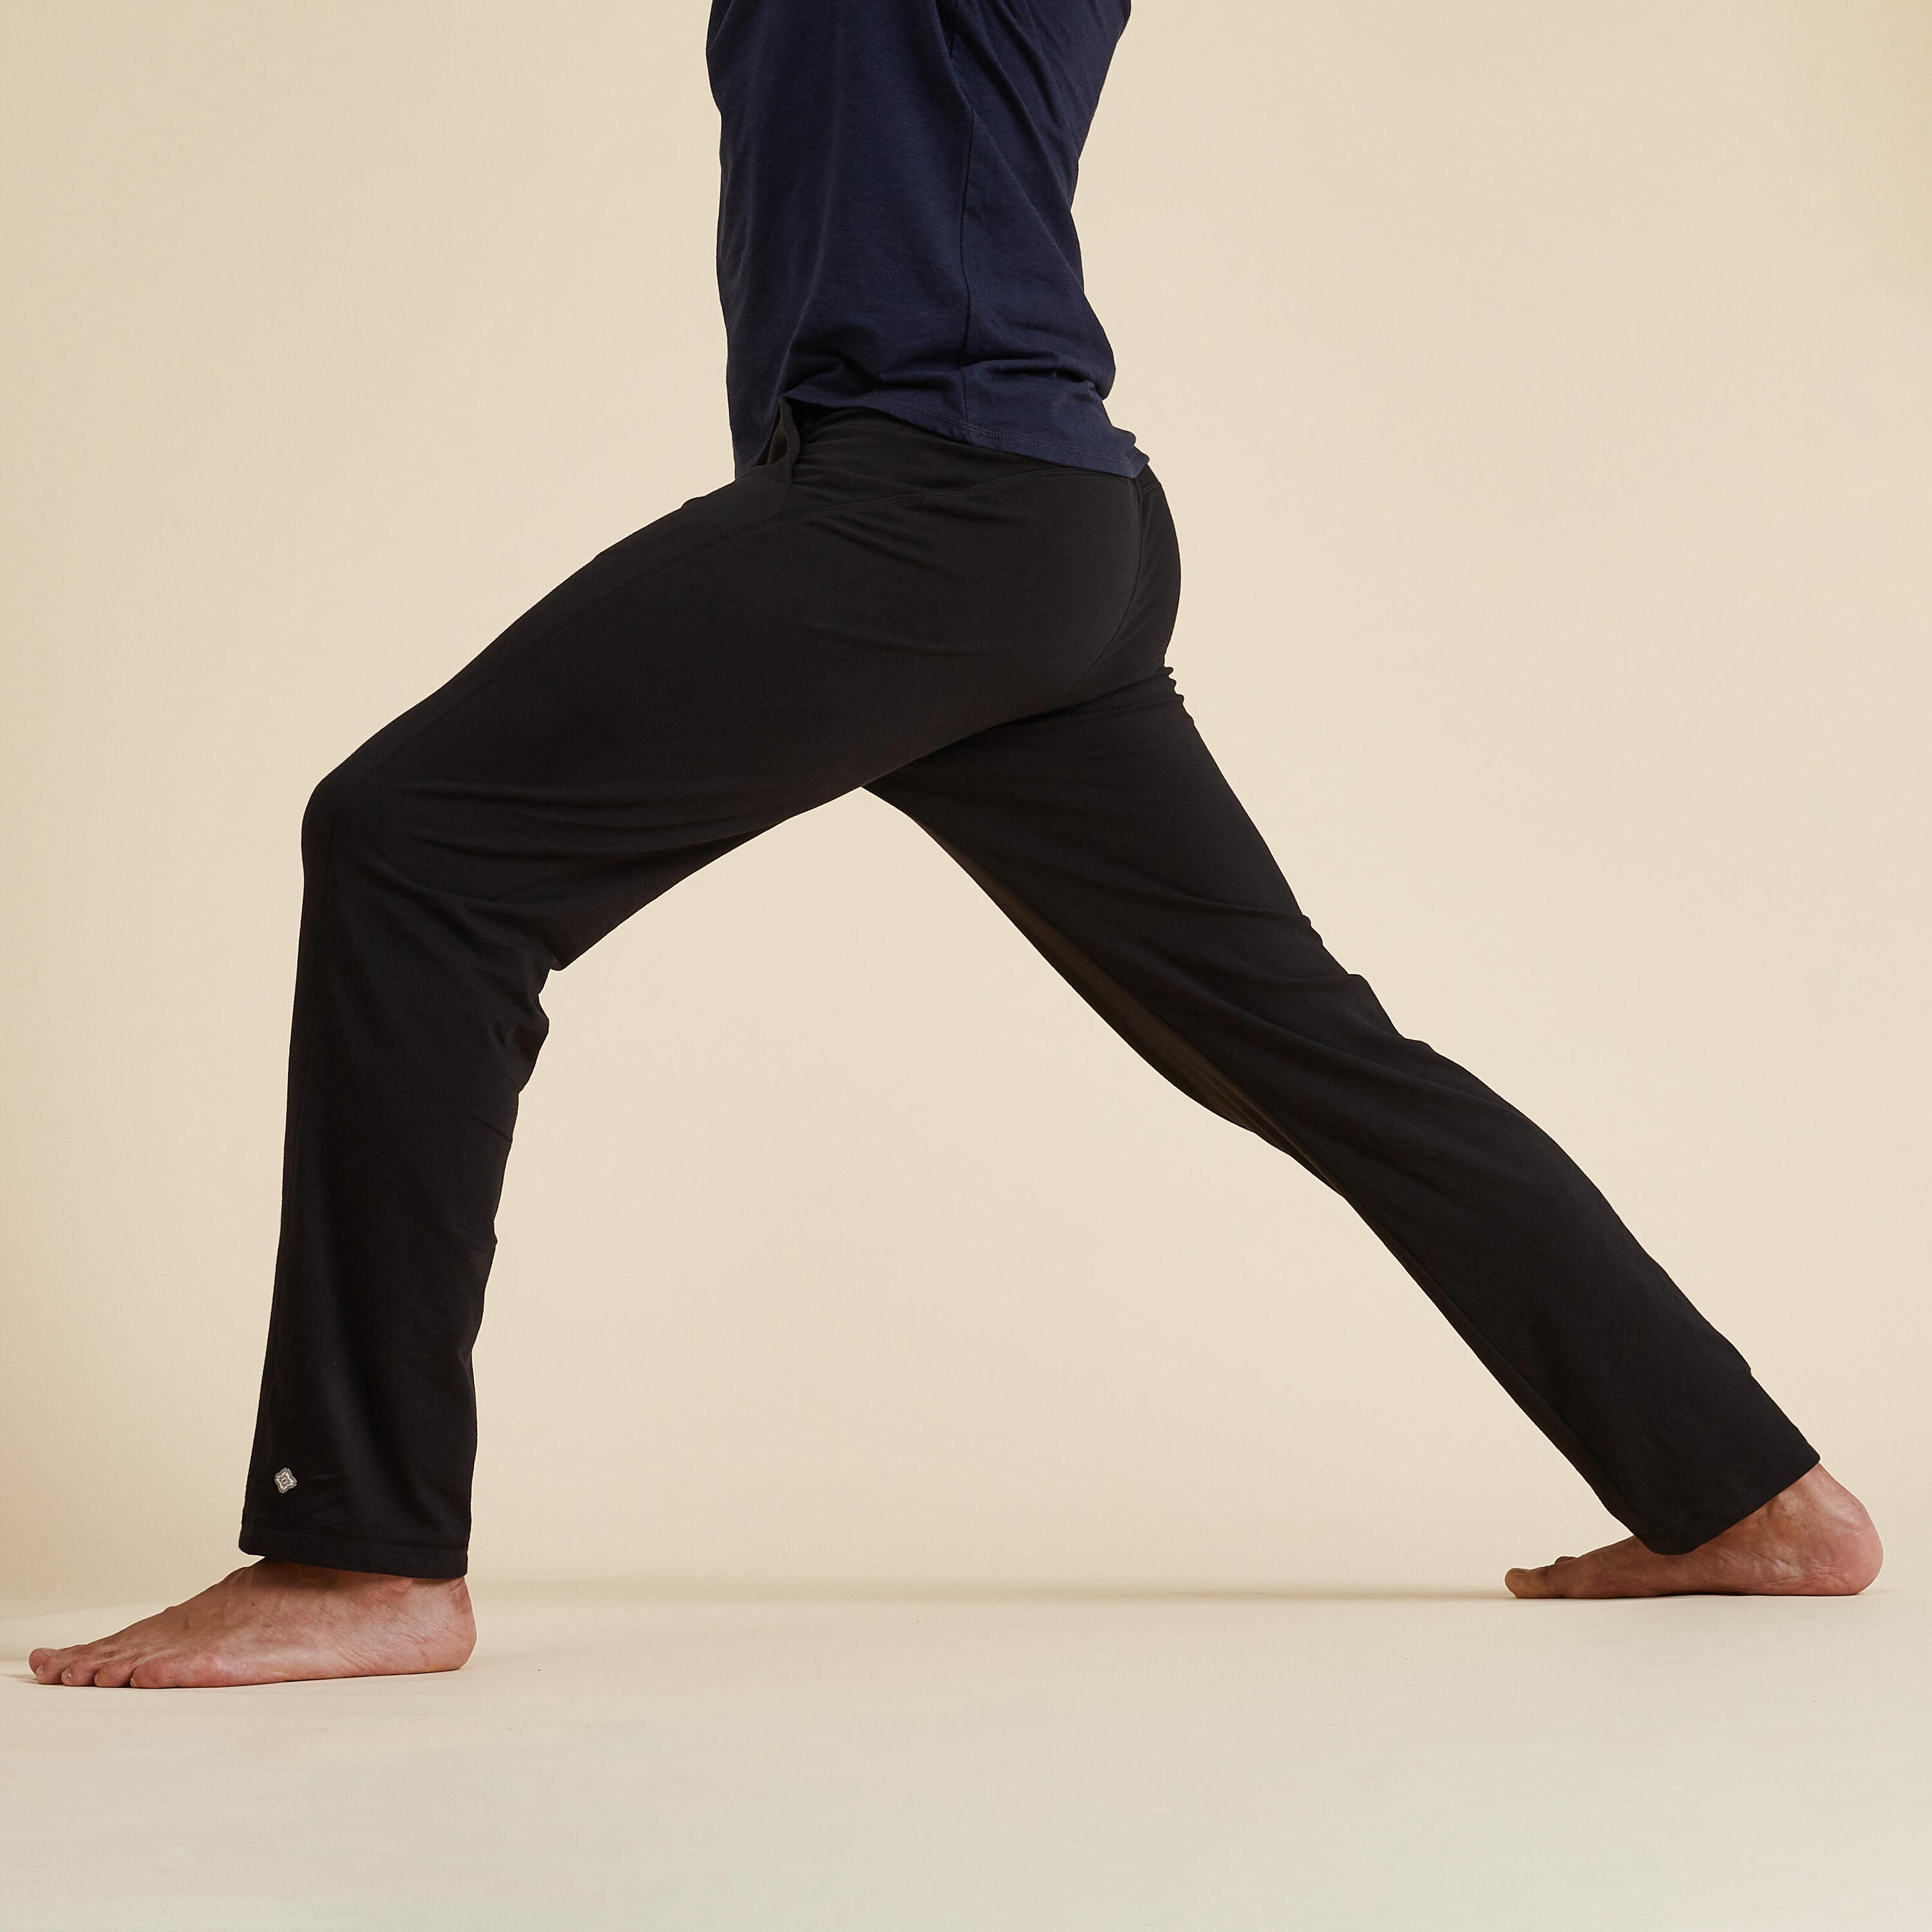 Men's Gentle Yoga Bottoms 3/4